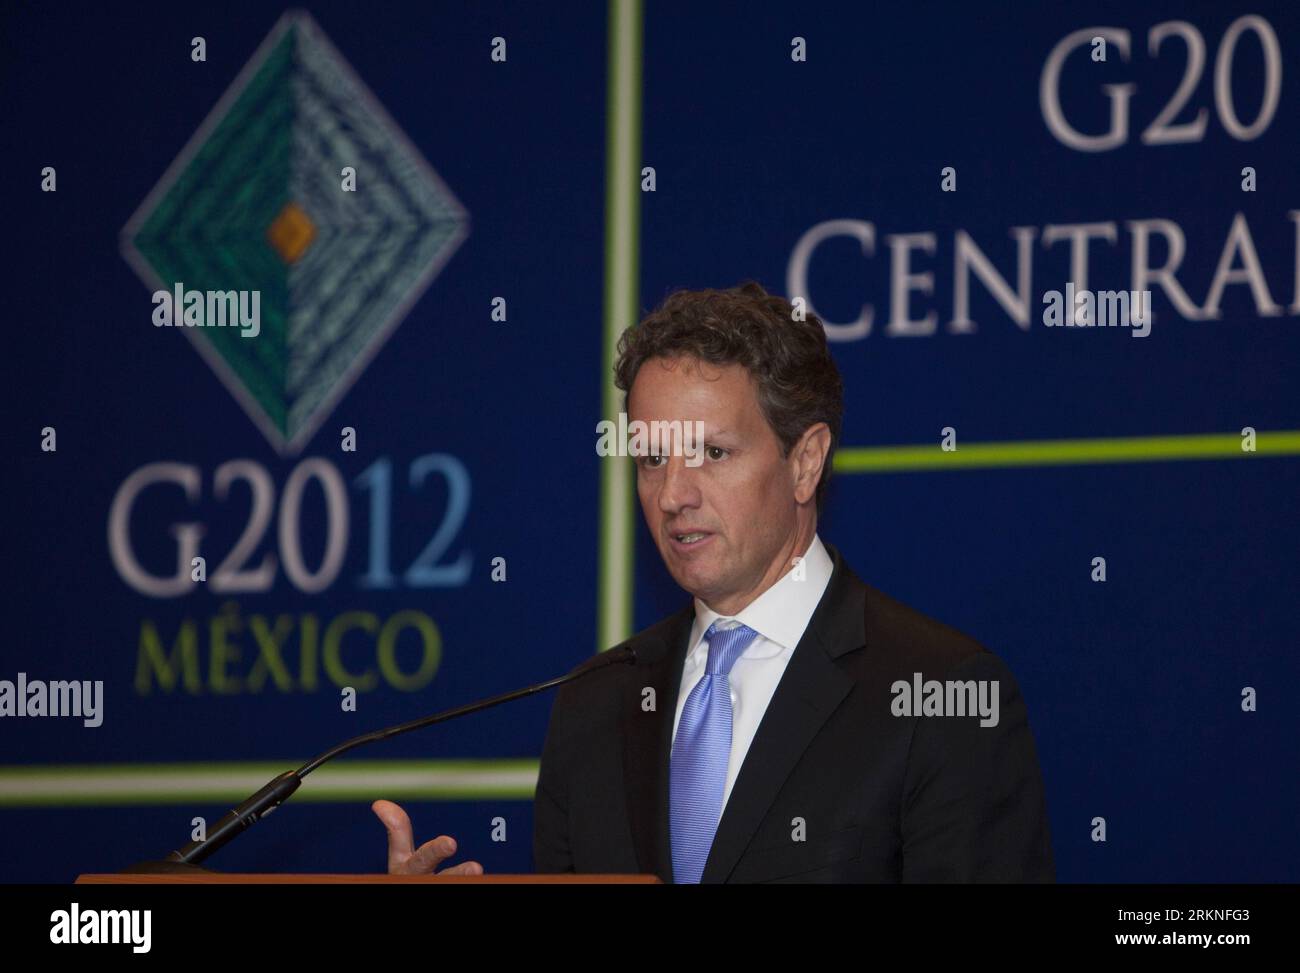 Bildnummer : 57111420 Datum : 25.02.2012 Copyright : imago/Xinhua (120227) -- MEXICO, 27 février 2012 (Xinhua) -- le secrétaire américain au Trésor, Timothy Geithner, assiste à une conférence de presse lors de la première réunion des ministres des Finances et des présidents des banques centrales du G20 à Mexico, capitale du Mexique, le 25 février 2012. La première réunion des ministres des Finances et des présidents des banques centrales du G20 s’est achevée dimanche. (Xinhua/Shi Sisi) (zyw) MEXICO-MEXICO CITY-G20 PUBLICATIONxNOTxINxCHN People Politik Wirtschaft G20 G 20 premiumd xsp x0x 2012 quer 57111420 Date 25 02 2012 Copyright Imag Banque D'Images